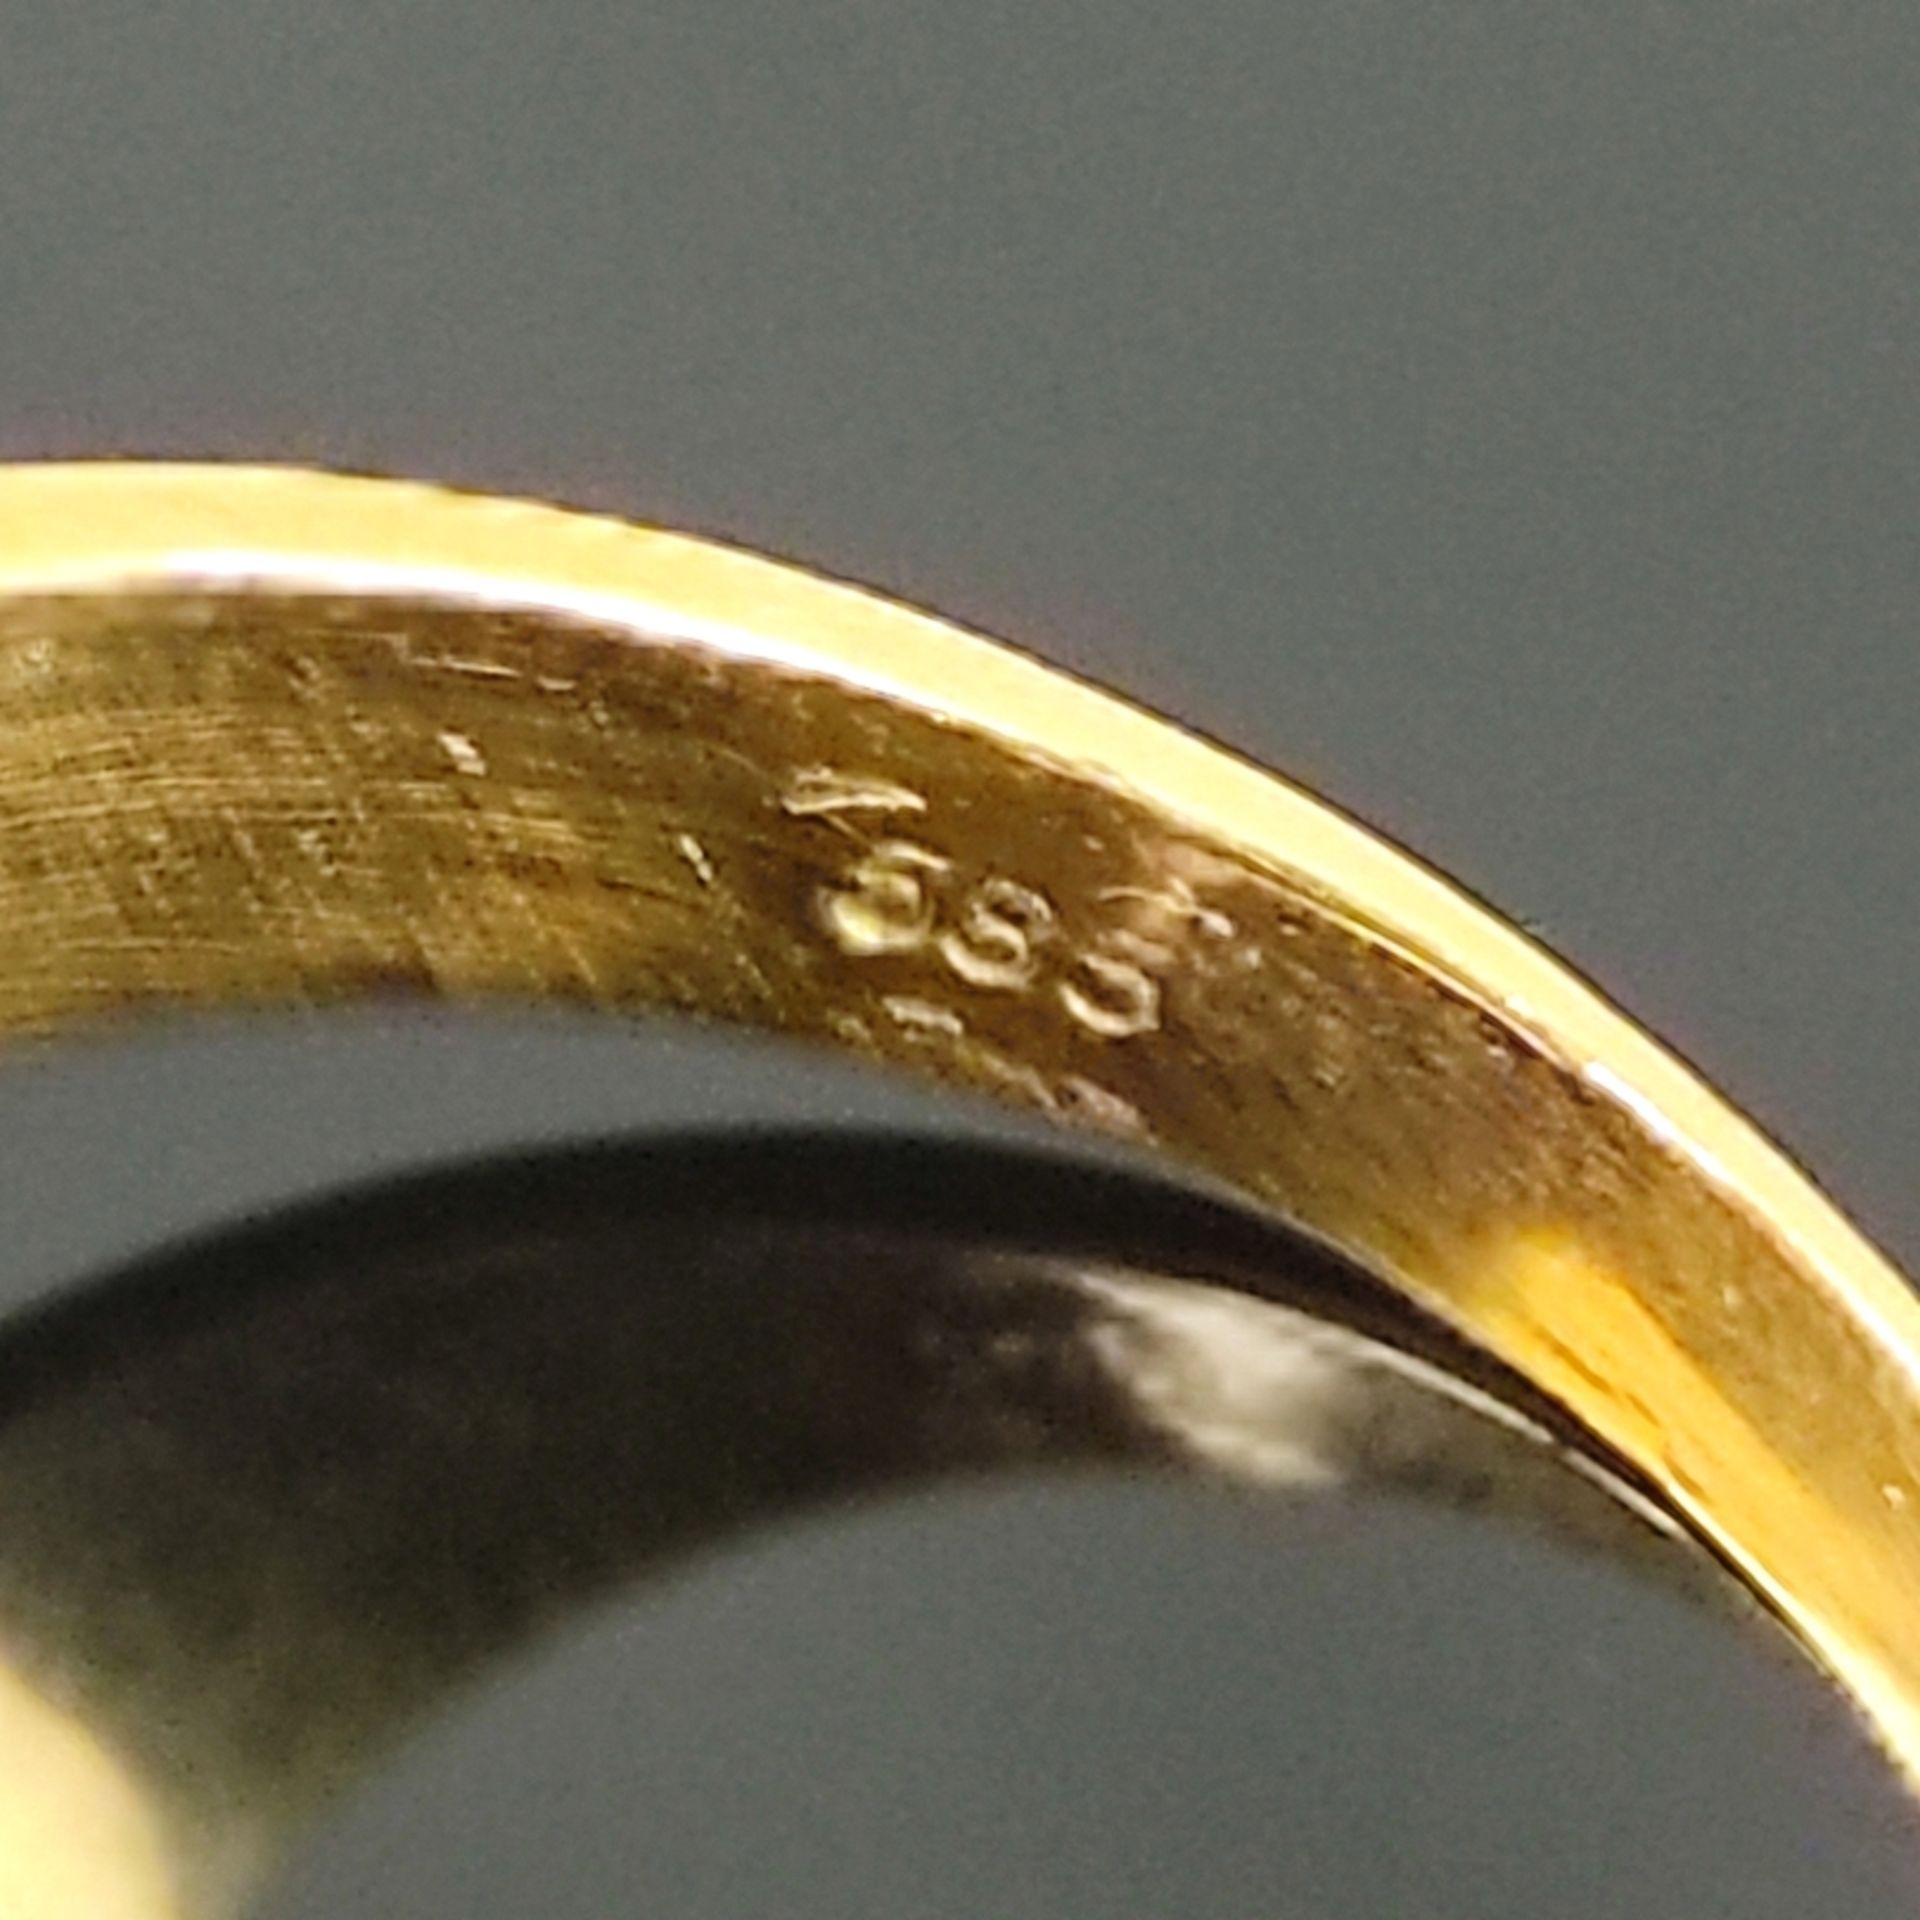 Amethyst-Ring, 585/14K Gelbgold (punziert), Gesamtgewicht 5g, mittig von Krappen eingefasster achte - Bild 3 aus 4